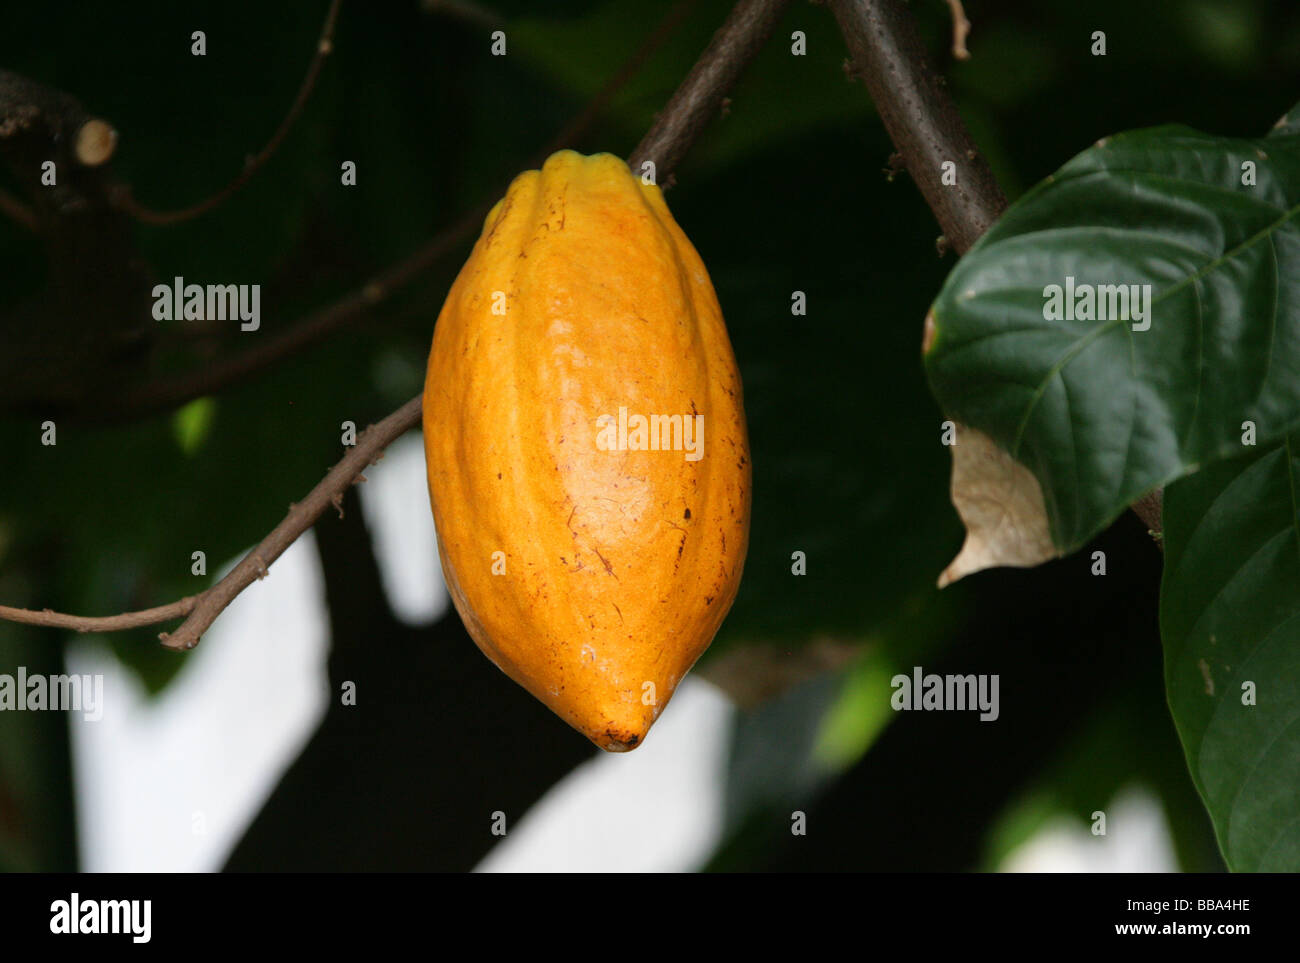 Samenkapsel ein Kakaobaum oder Kakao-Baum, Theobroma Cacao, Malvaceae. Die Samen dieser Frucht dienen dazu machen Schokolade und Kakao Stockfoto